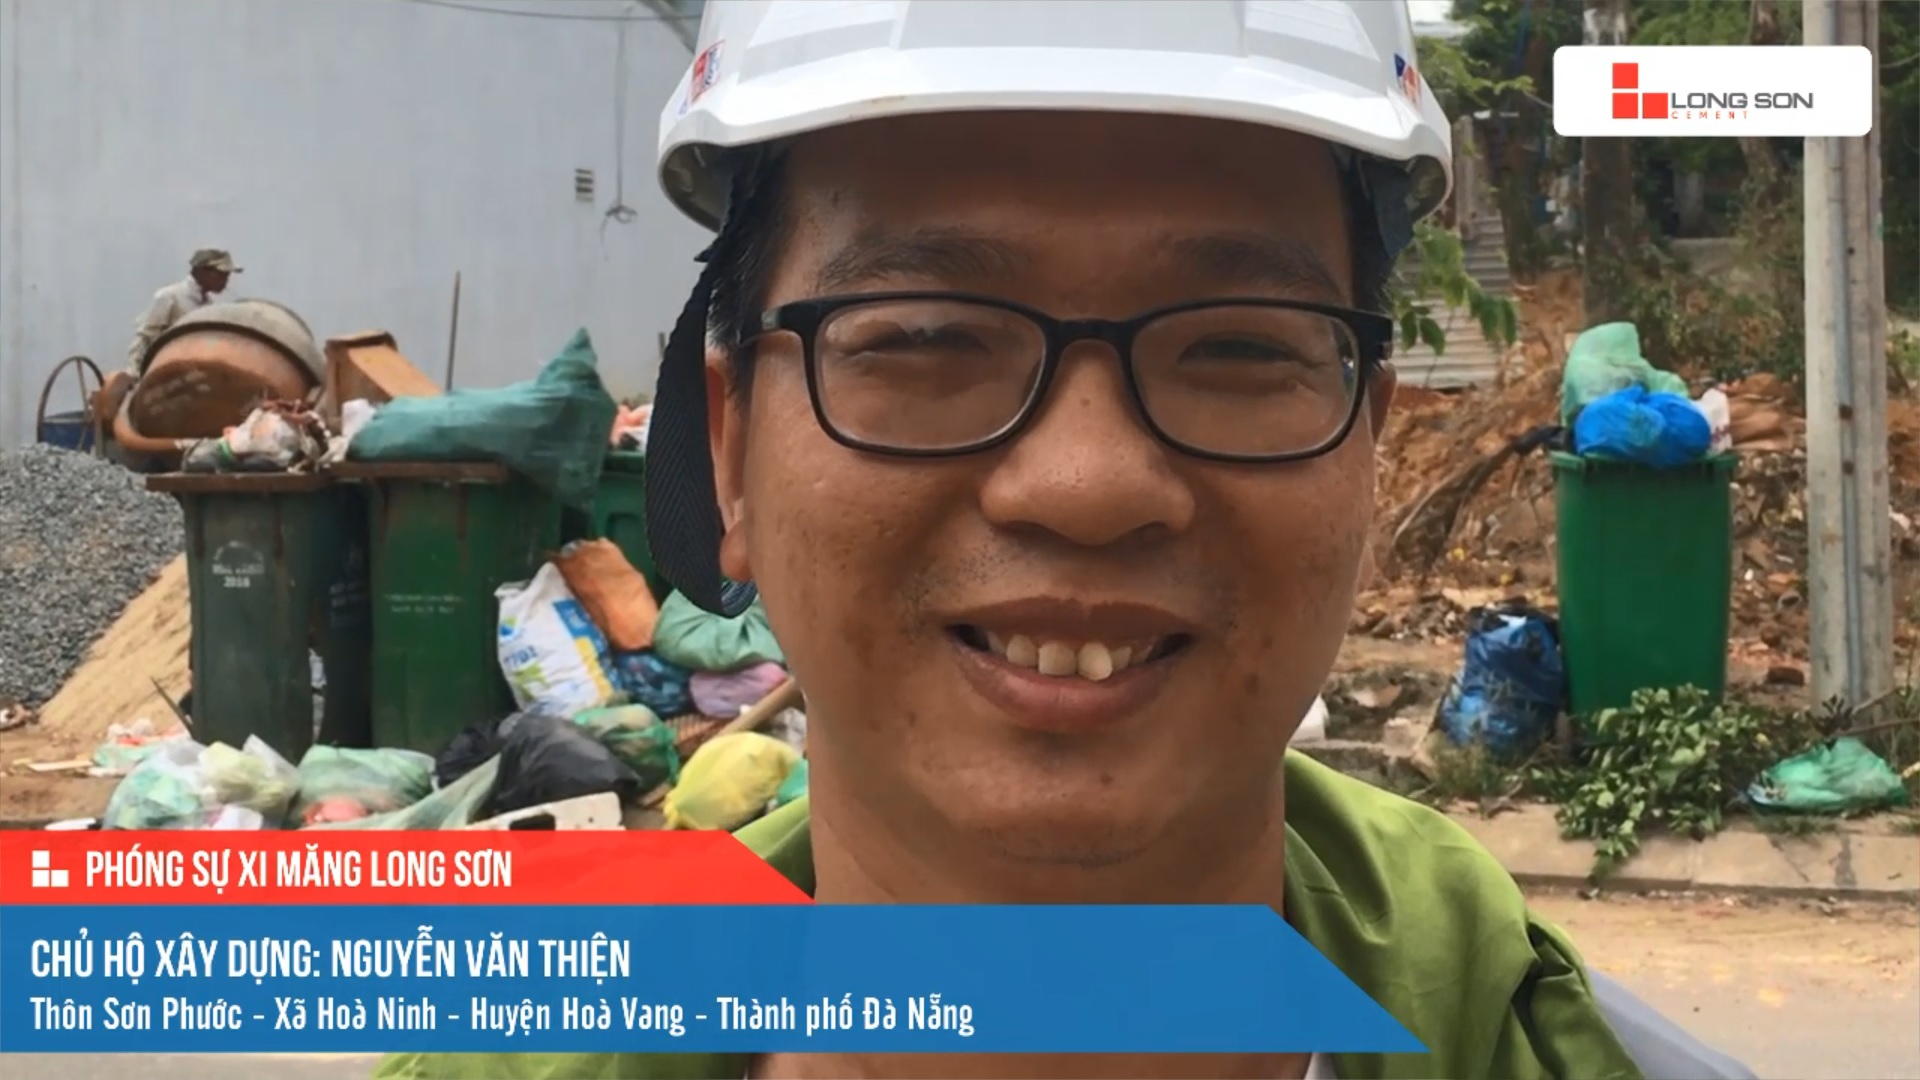 Phóng sự công trình sử dụng Xi măng Long Sơn tại Đà Nẵng 22.04.2021